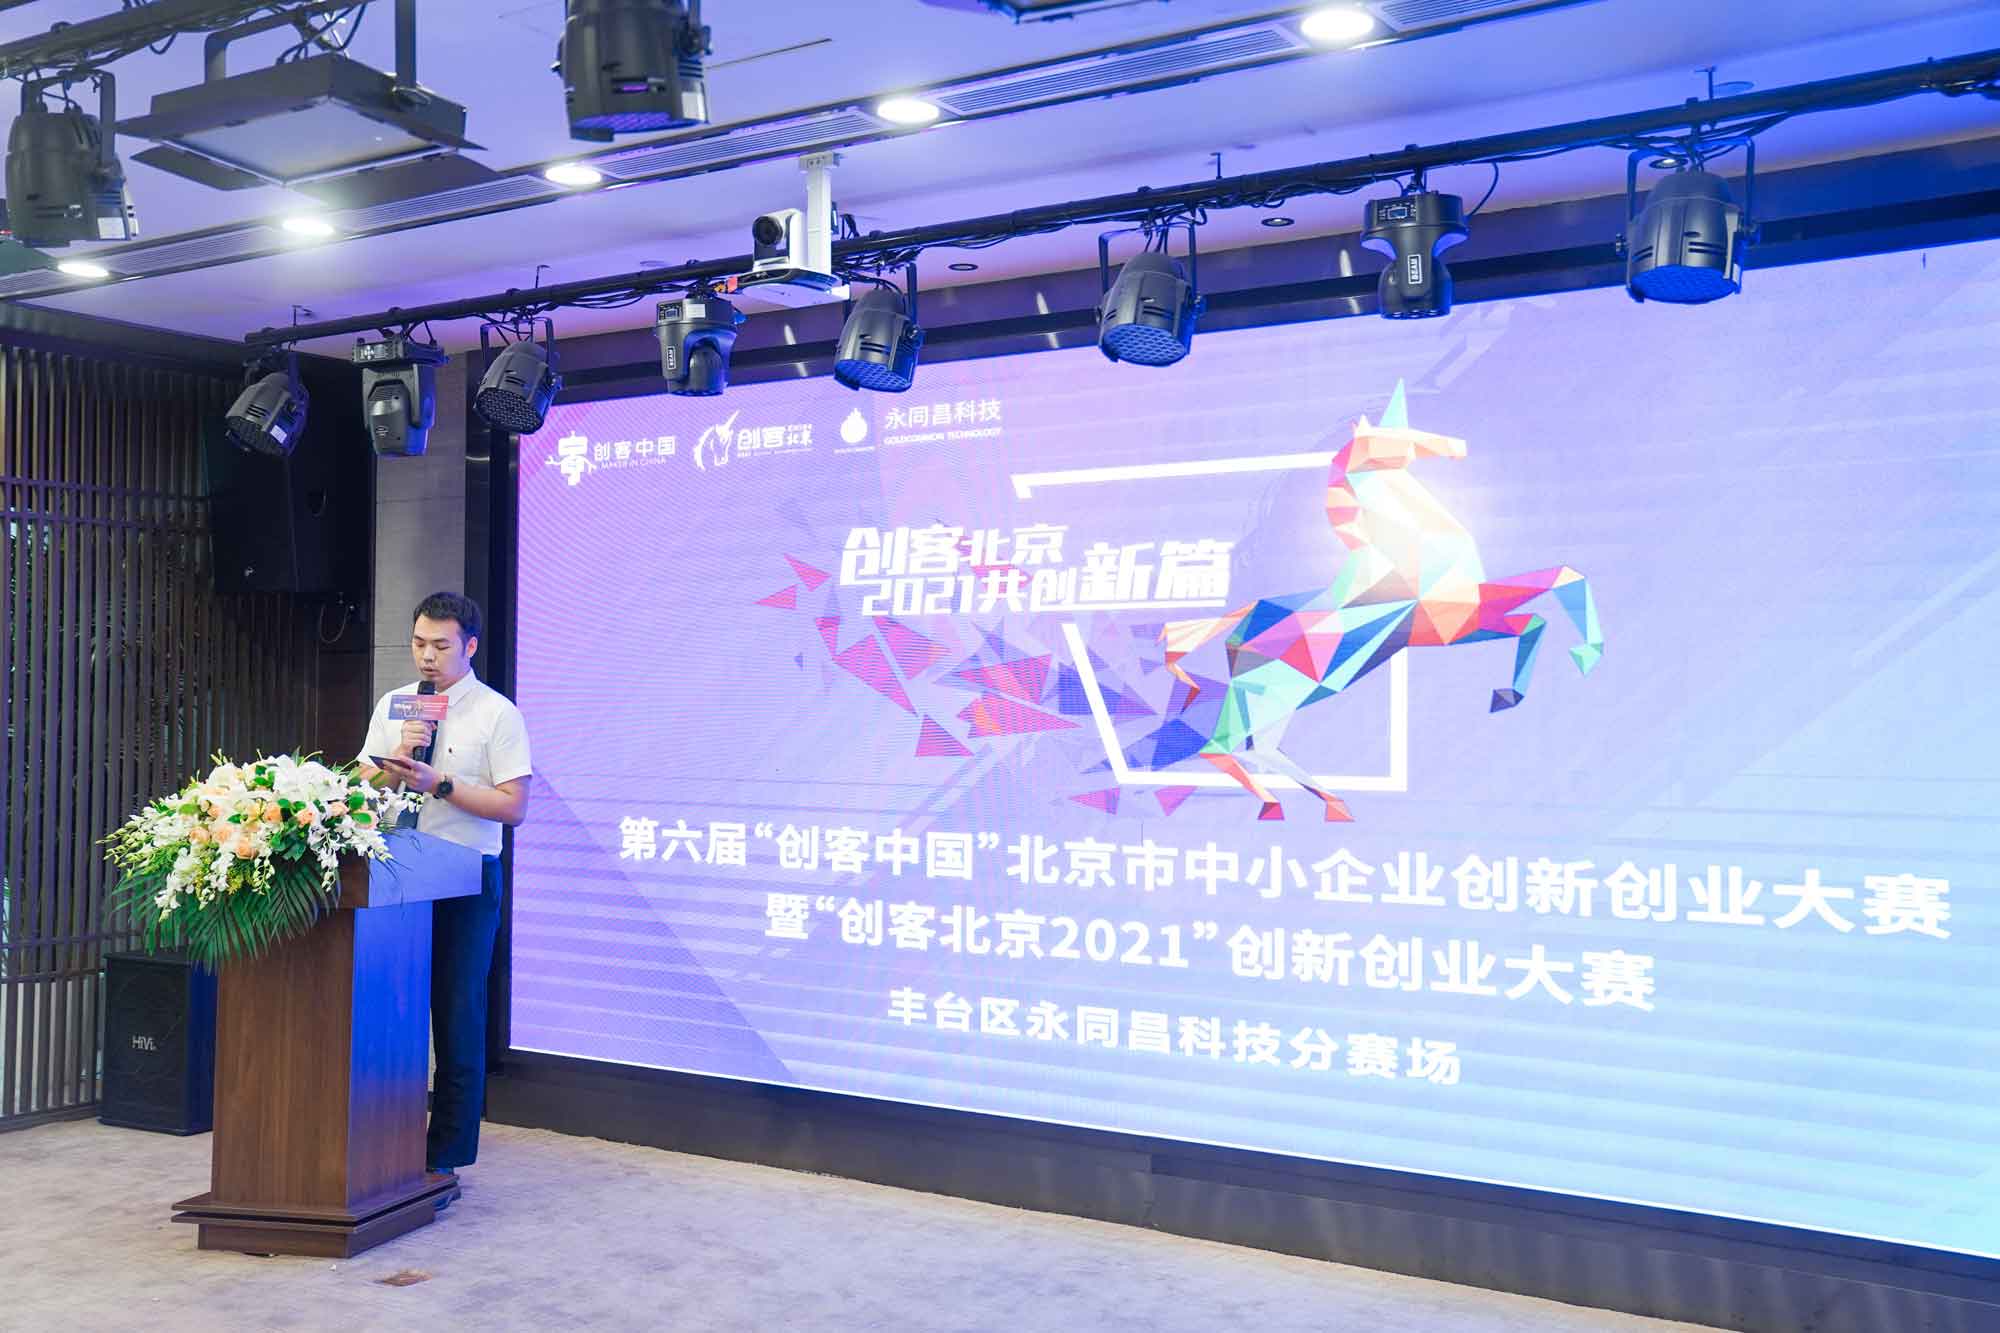 圆满举办 | “创客北京2021”创新创业大赛丰台区永同昌科技分赛场路演完美收官